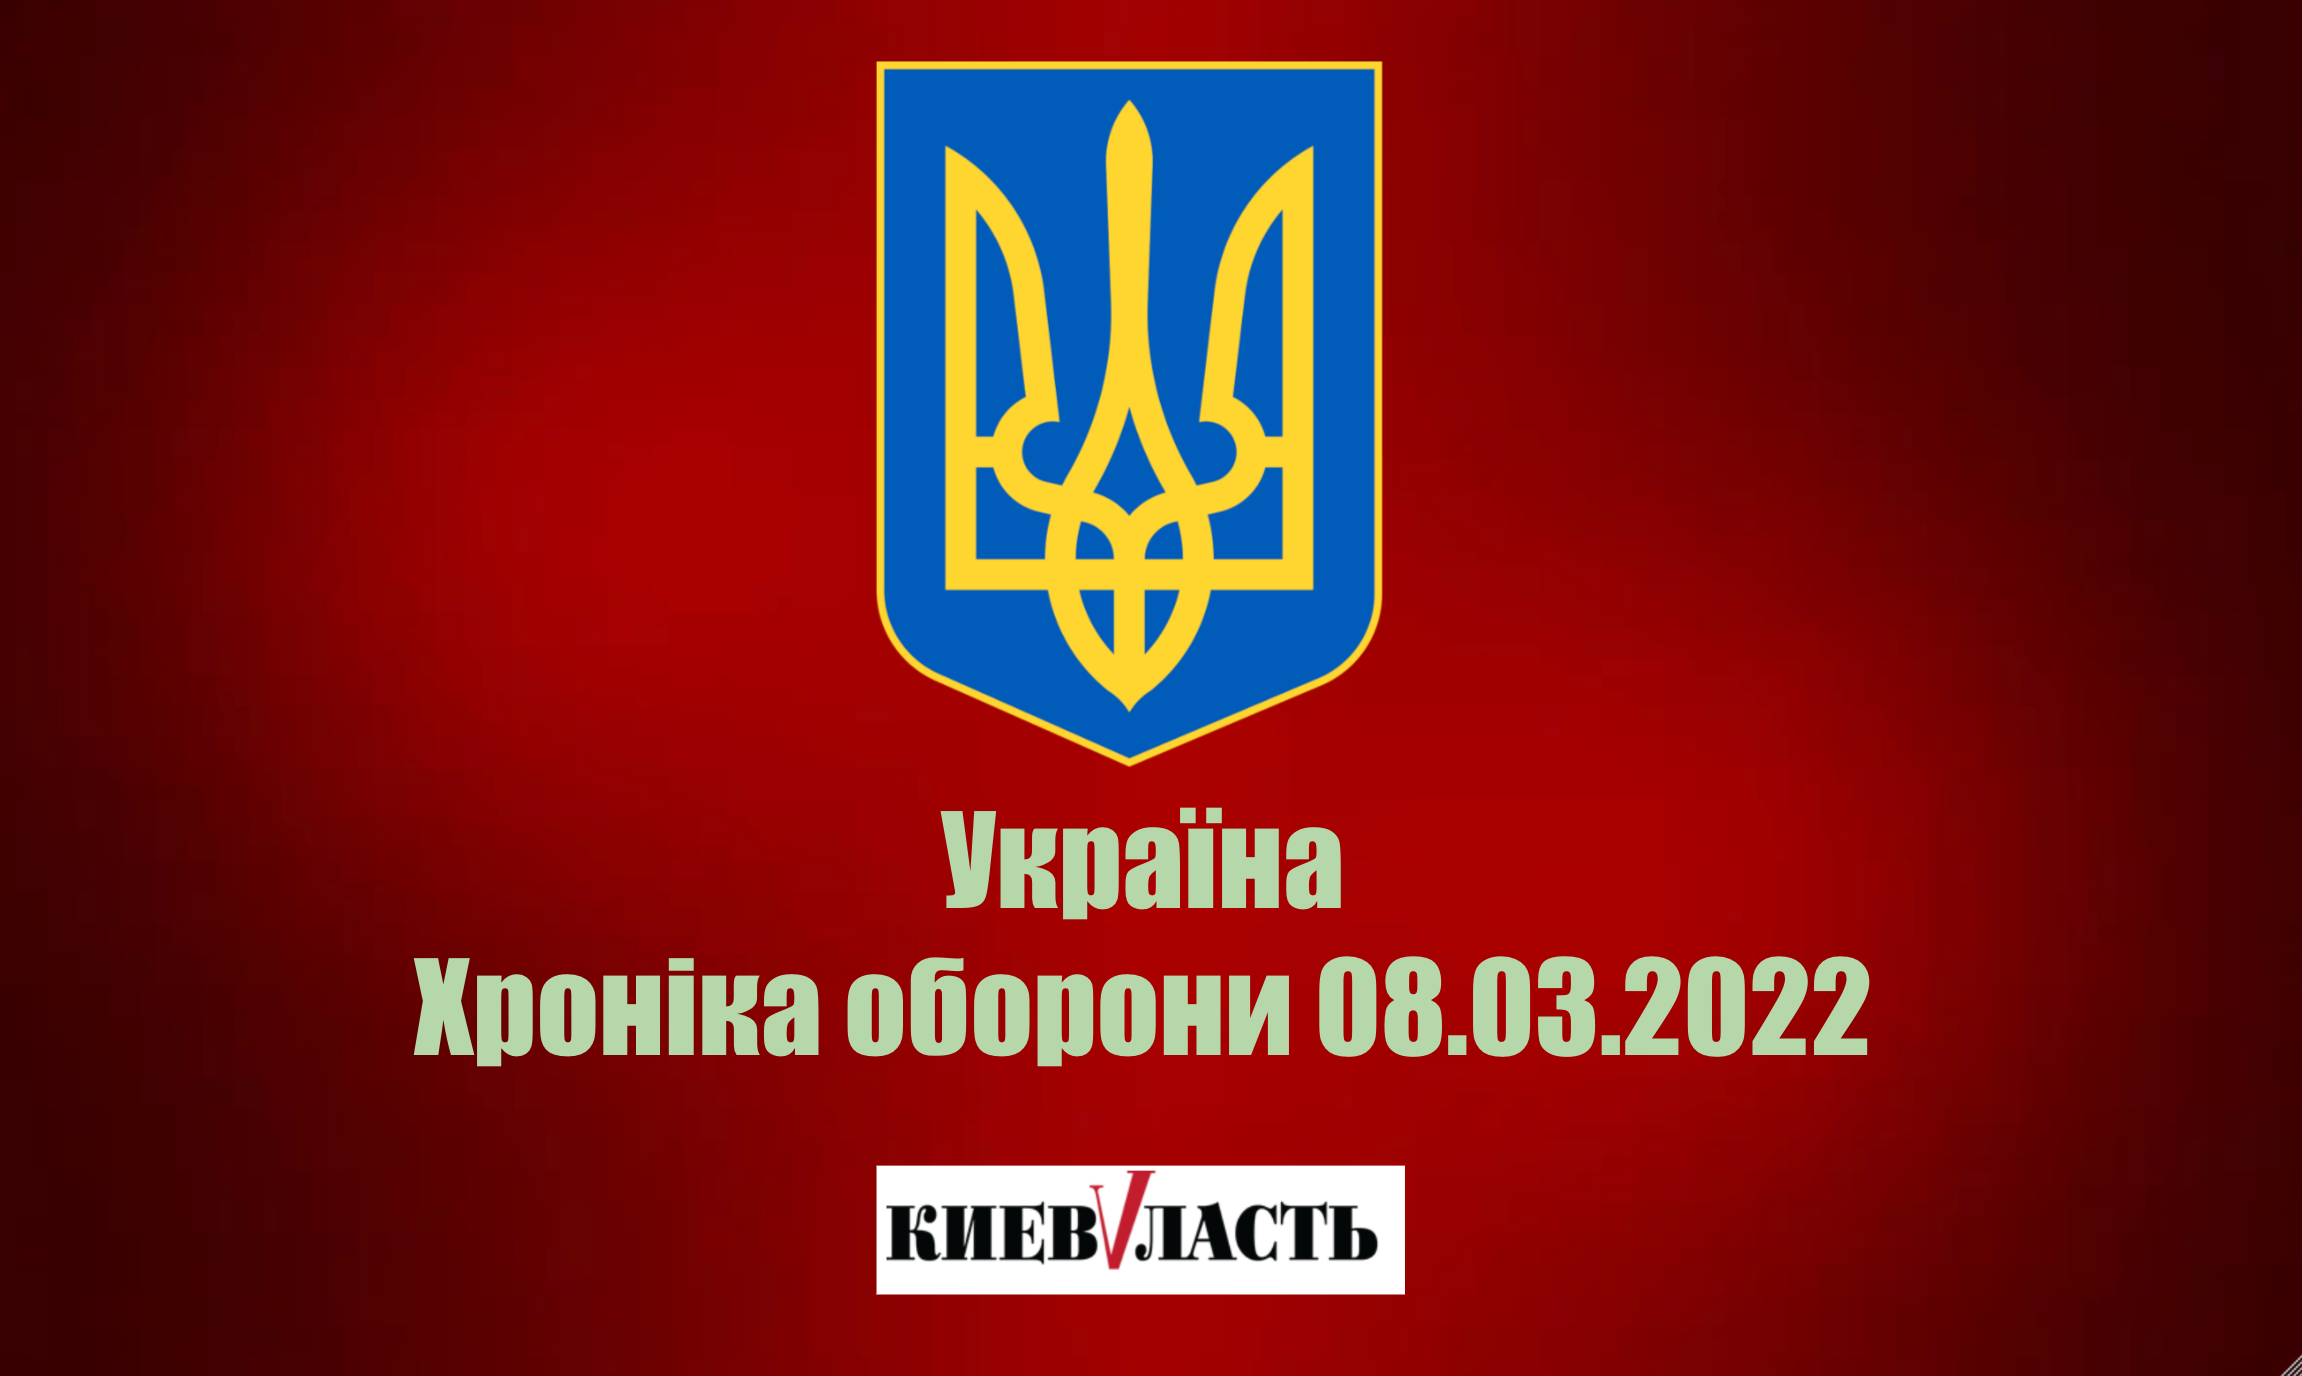 Окупанти планують направити під Київ до тисячі бойовиків зі складу колишньої ПК “Вагнер” - Генштаб ЗСУ